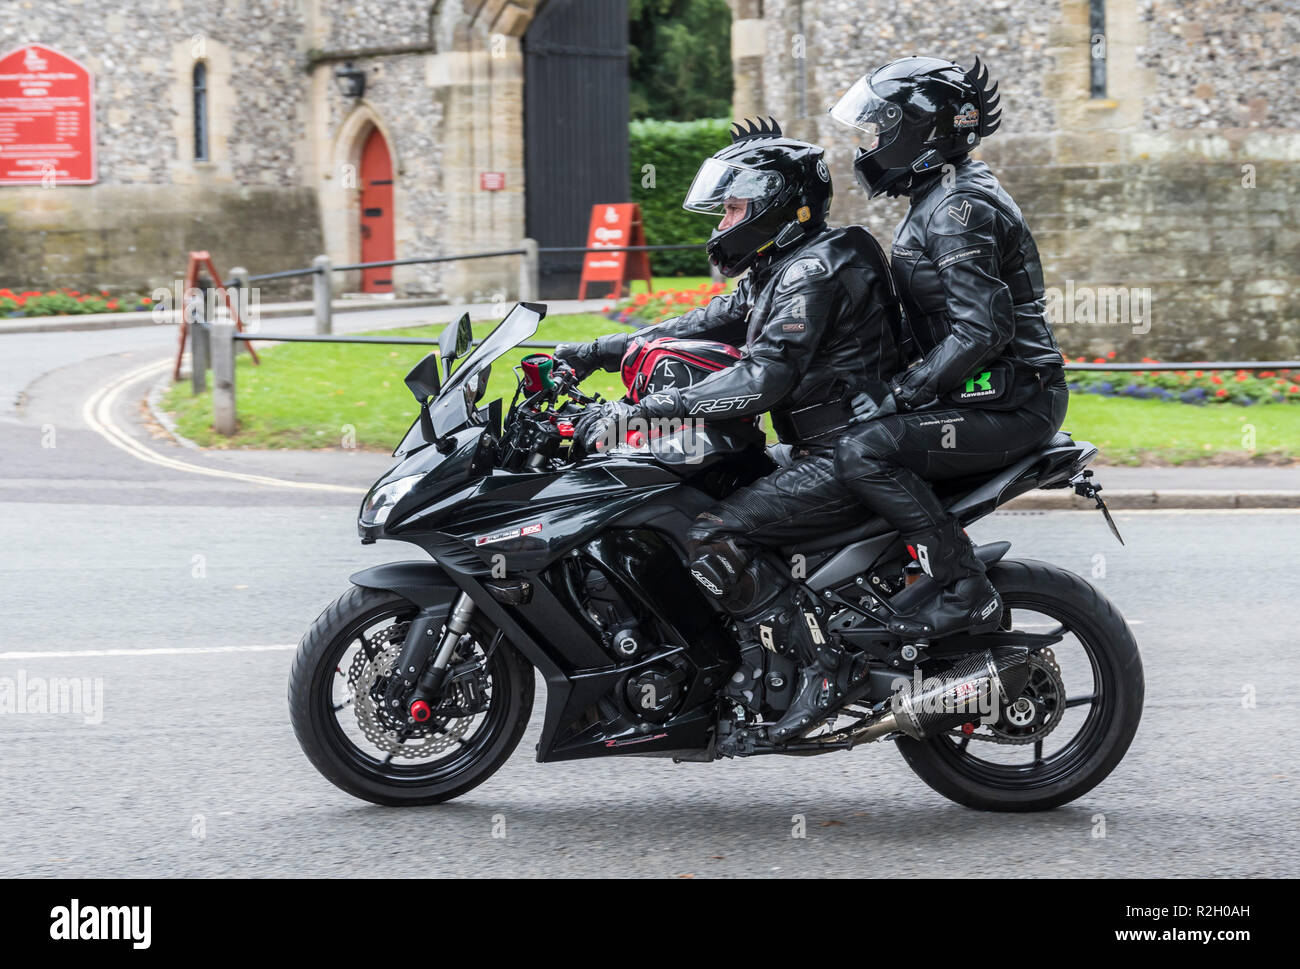 Uomo che cavalca Kawasaki Z1000SX motociclo con femmina pillion passeggero in cuoi nero & abbigliamento protettivo, NEL REGNO UNITO. Foto Stock